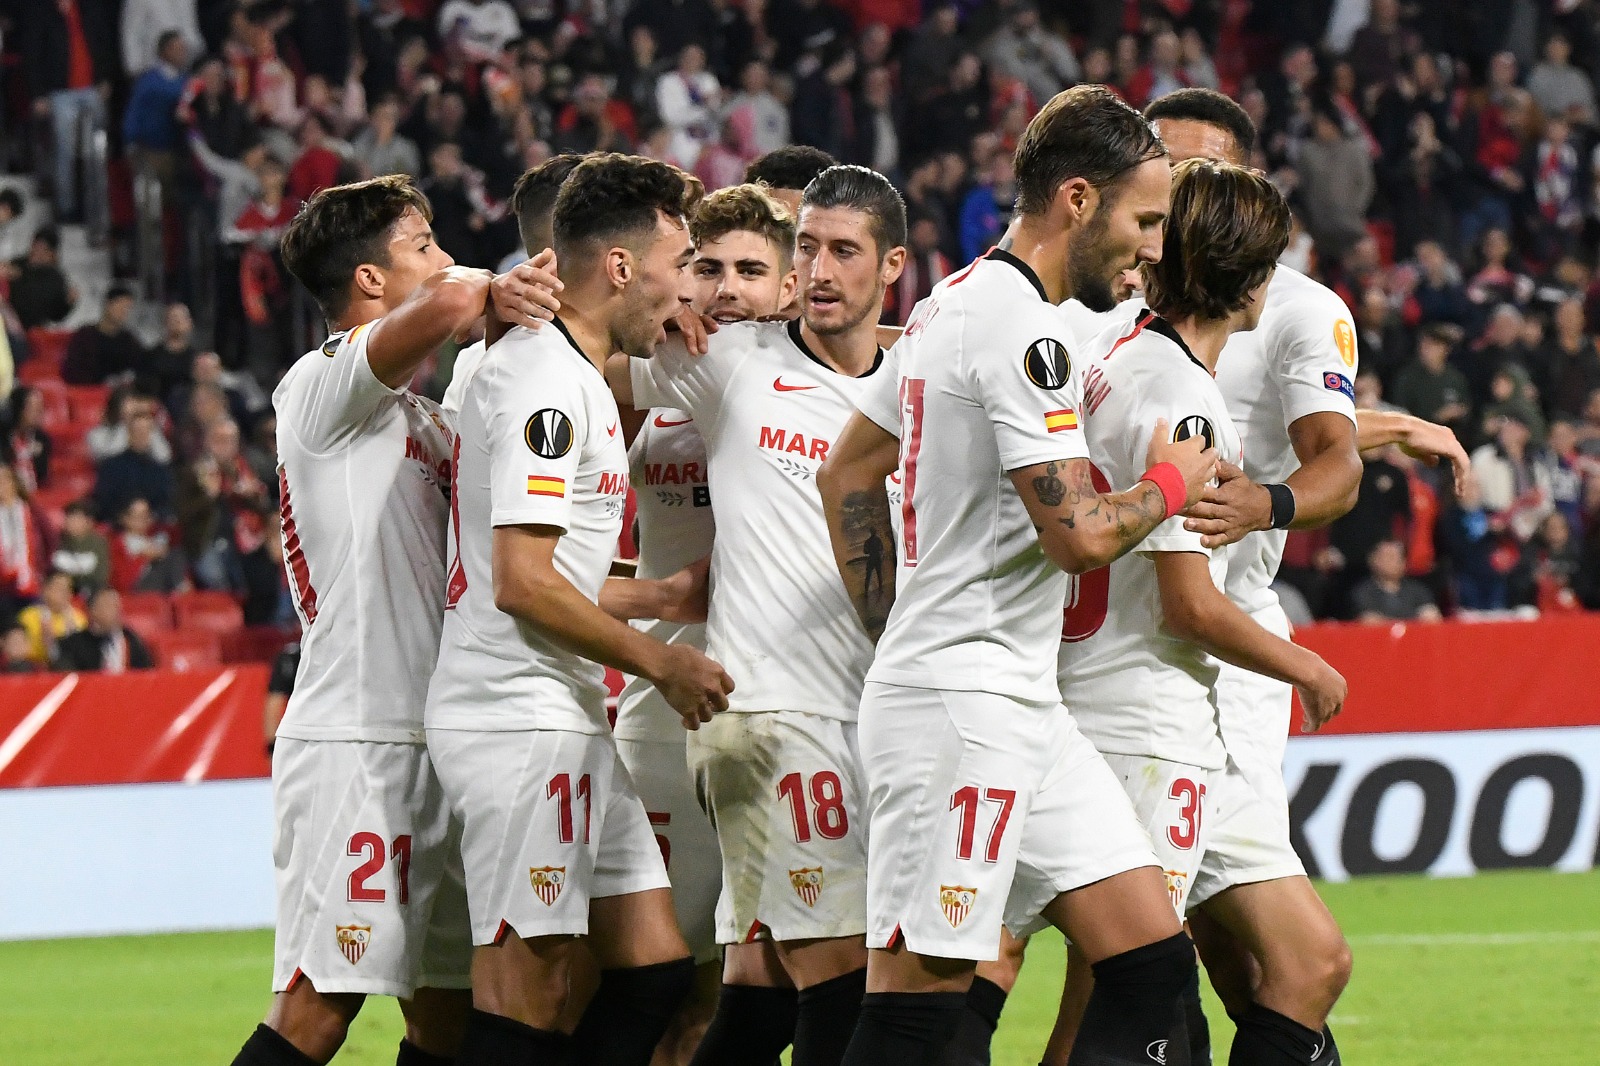 Sevilla FC celebrate after scoring against Dudelange 